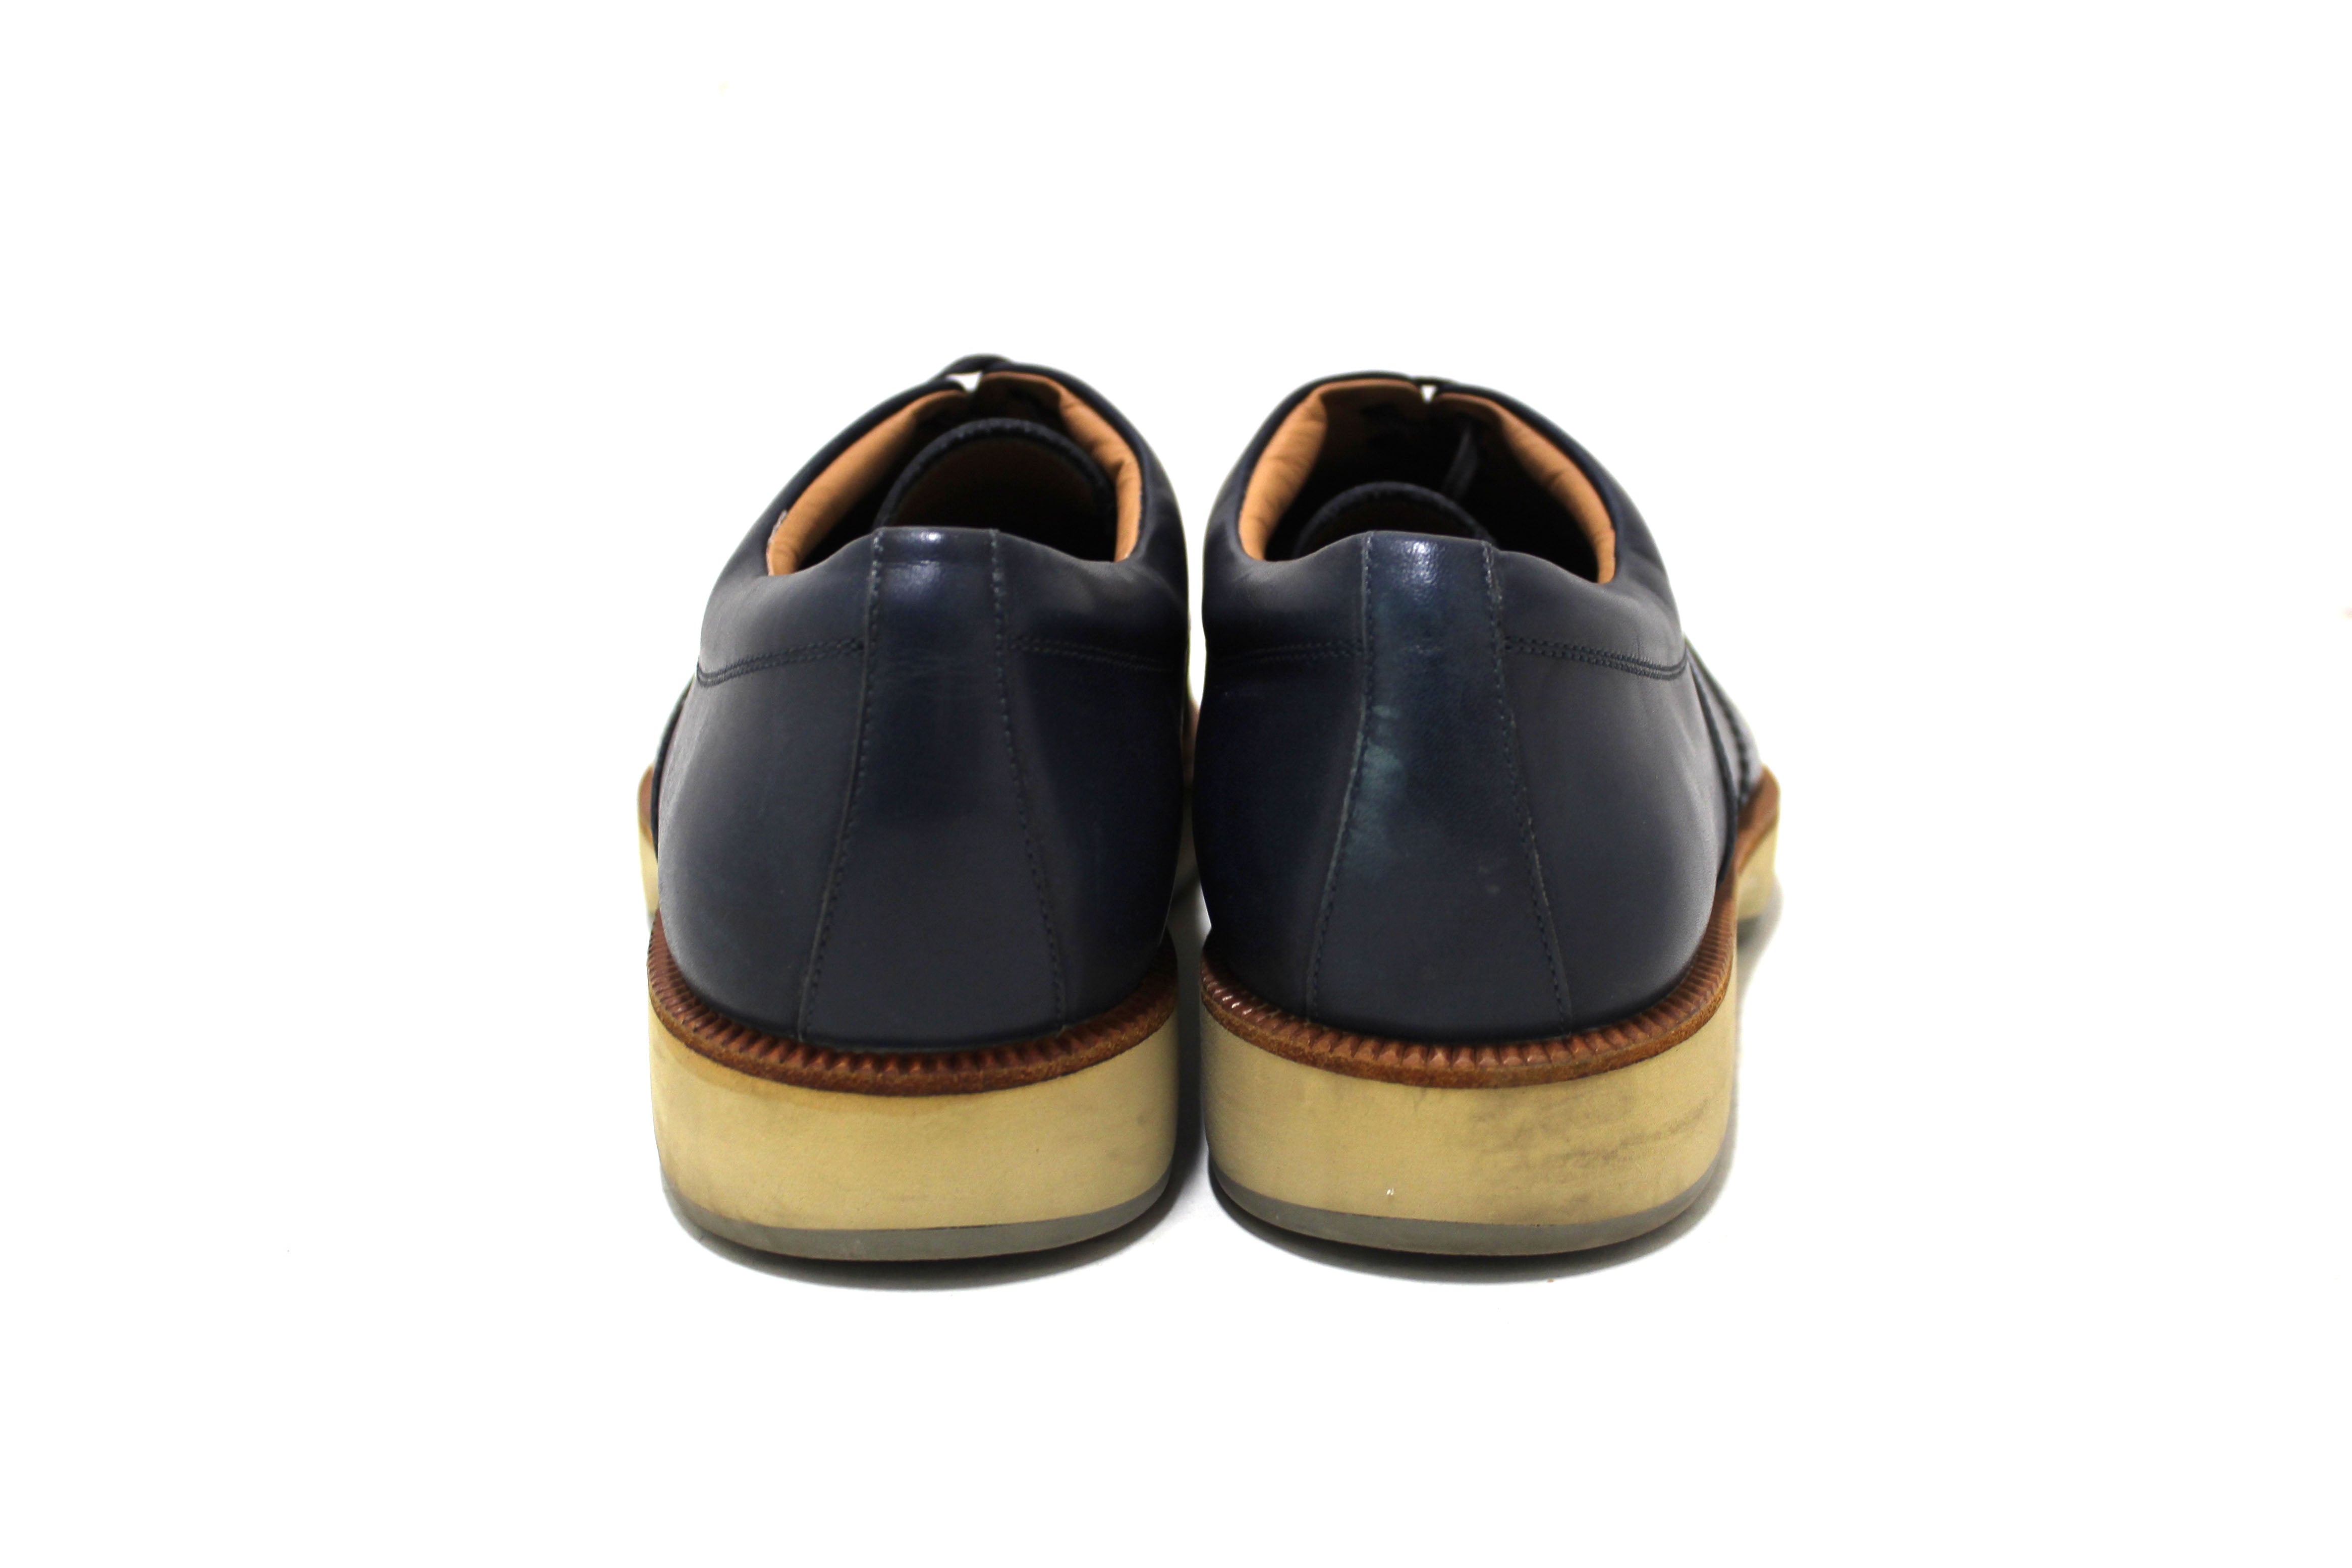 Authentic Salvatore Ferrgamo Men's Blue Calf Leather Wingtip Brogue Shoes size 8.5